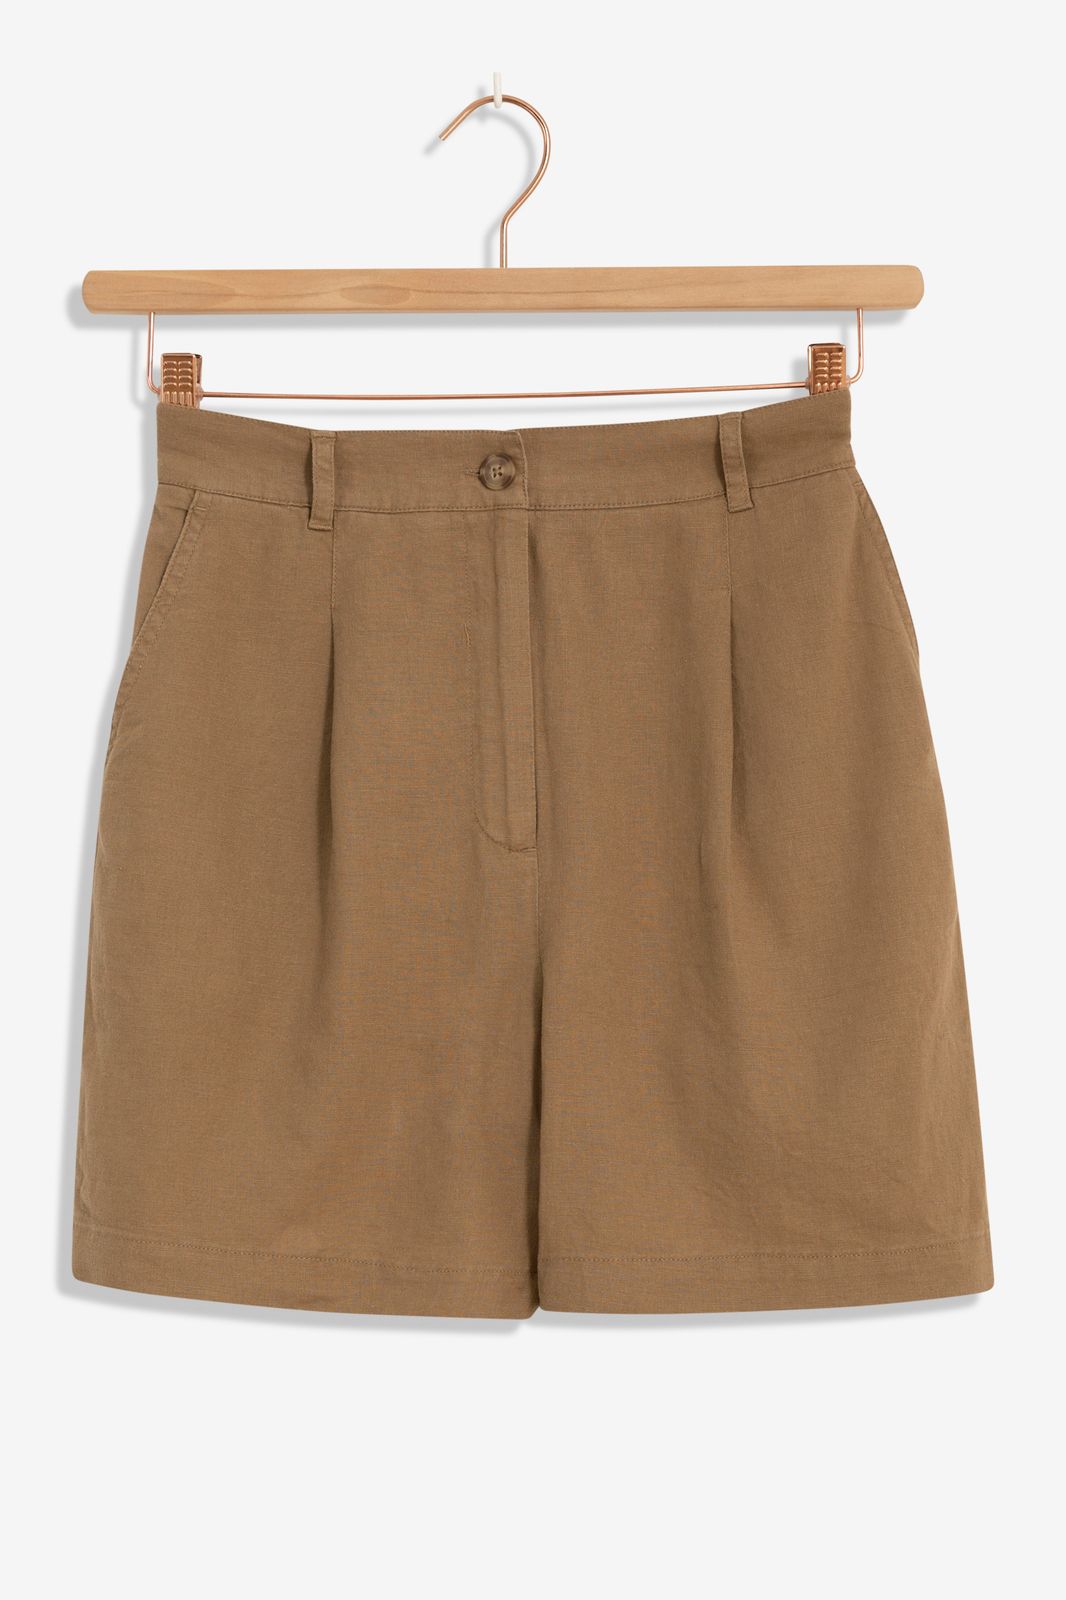 Bruine linnen shorts